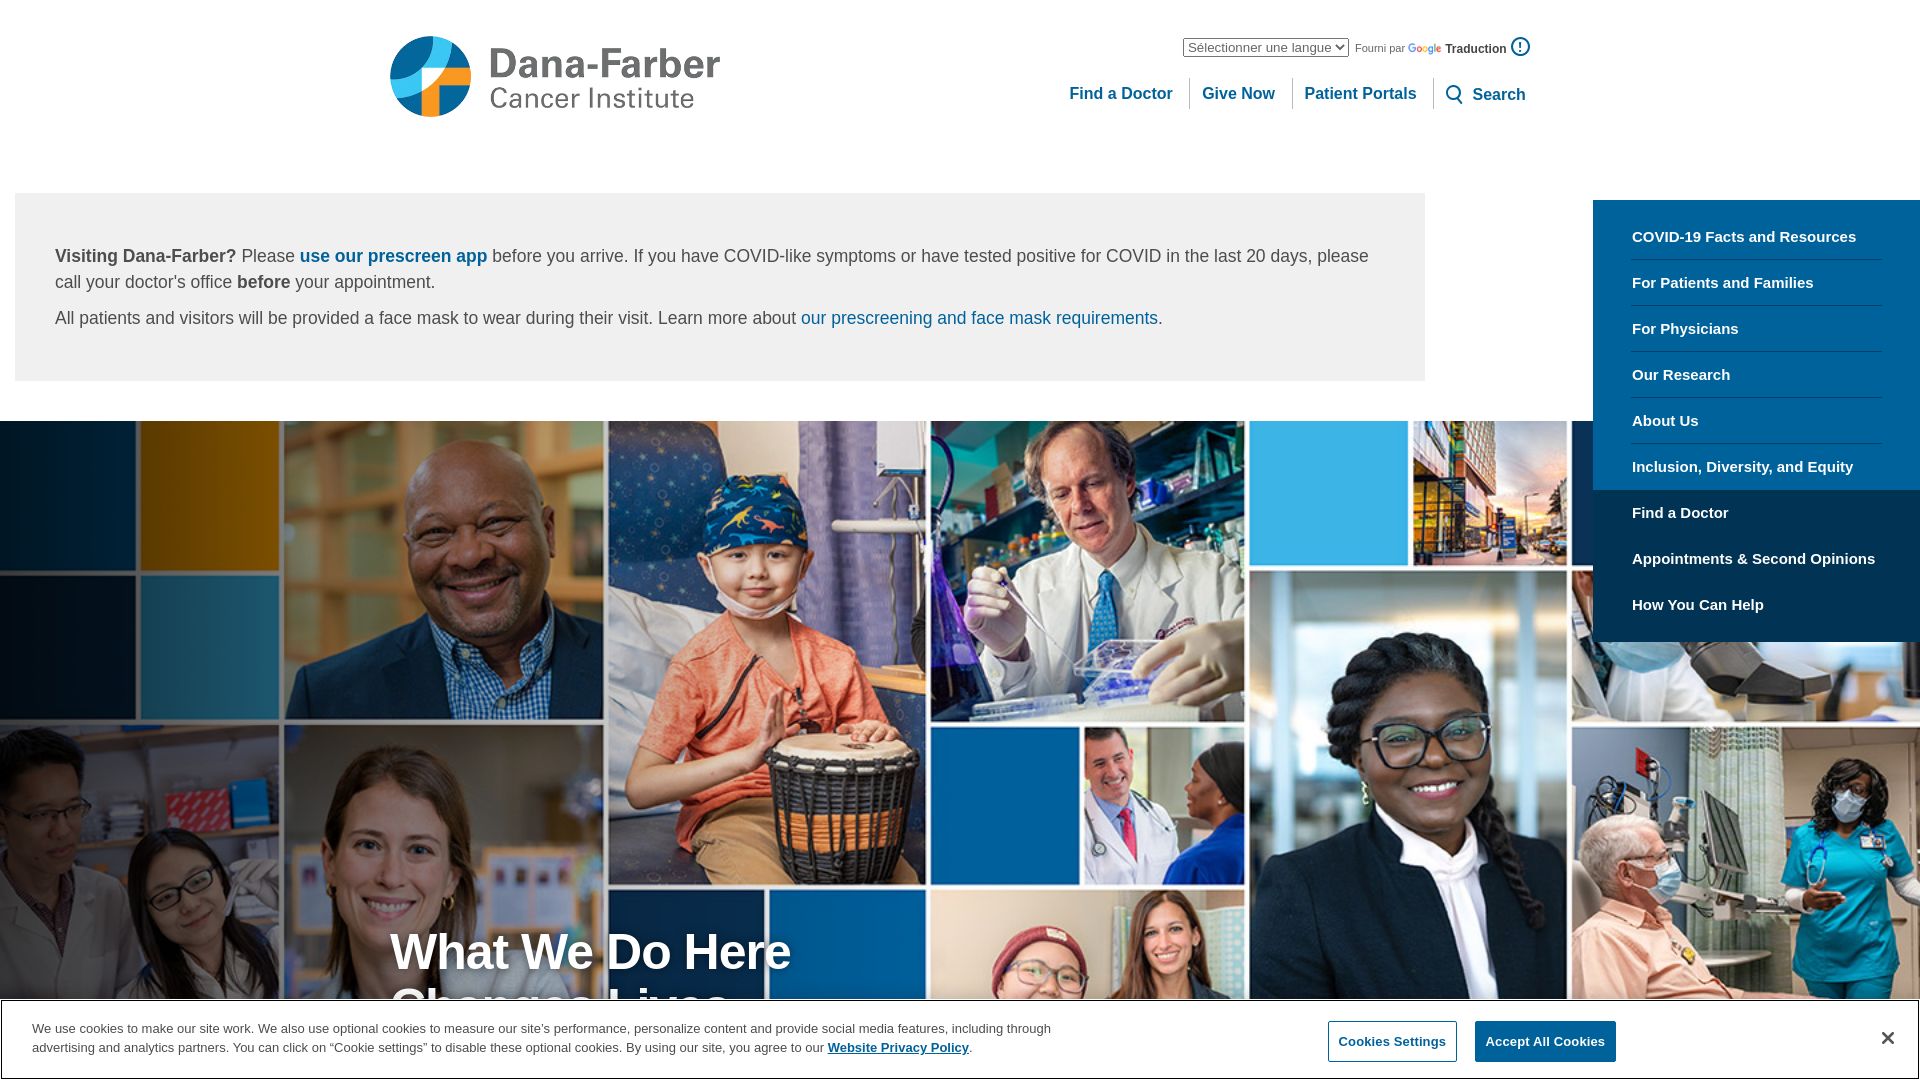 Estado web dana-farber.org está   ONLINE